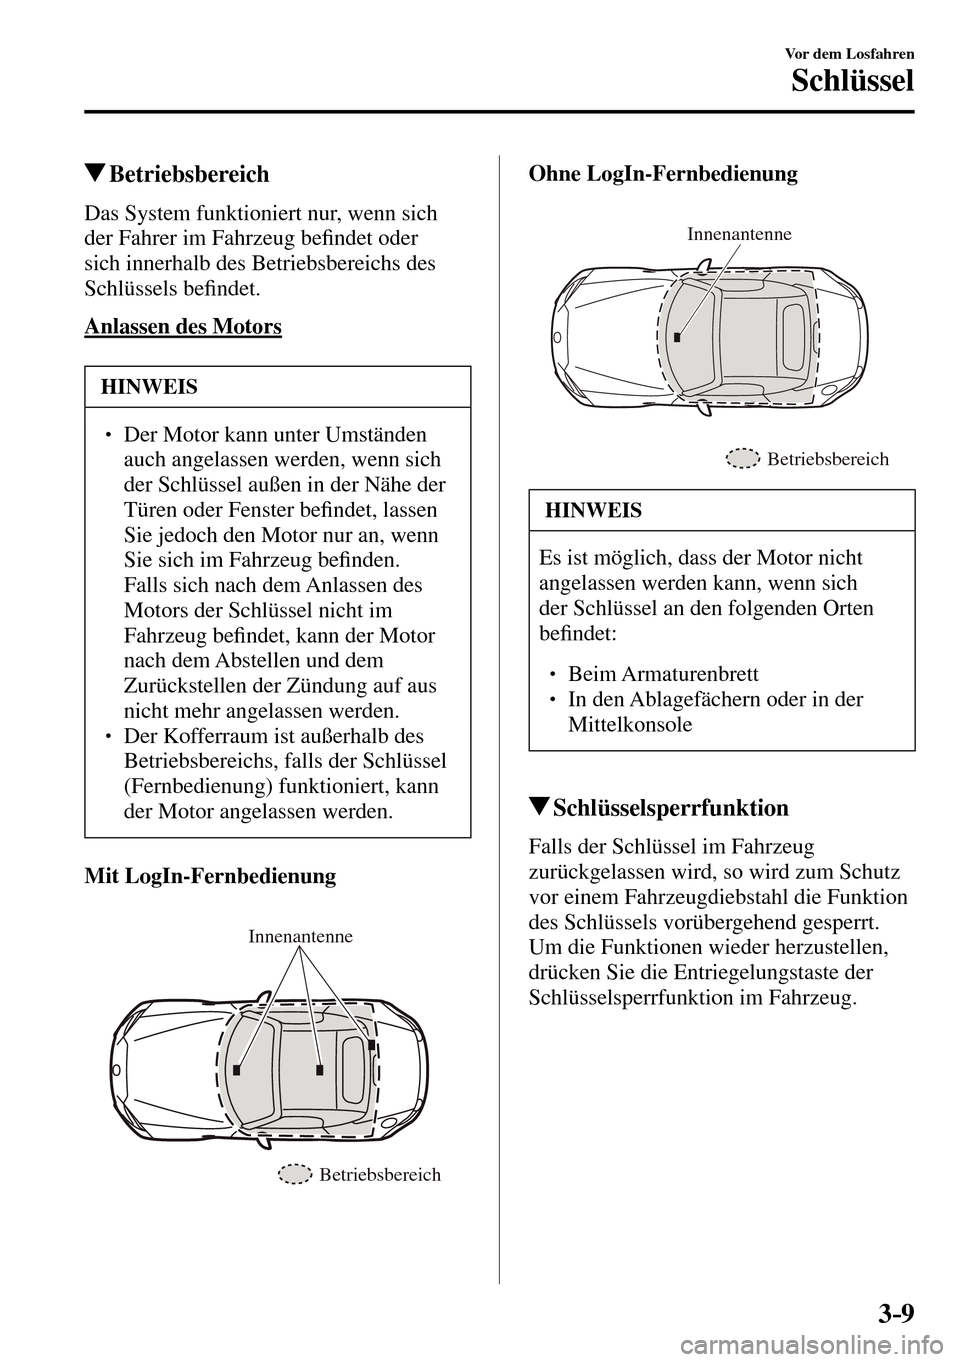 MAZDA MODEL MX-5 RF 2017  Betriebsanleitung (in German) 3–9
Vor dem Losfahren
Schlüssel
 Betriebsbereich
    Das System funktioniert nur, wenn sich 
der Fahrer im Fahrzeug be�¿ ndet oder 
sich innerhalb des Betriebsbereichs des 
Schlüssels be�¿ ndet.